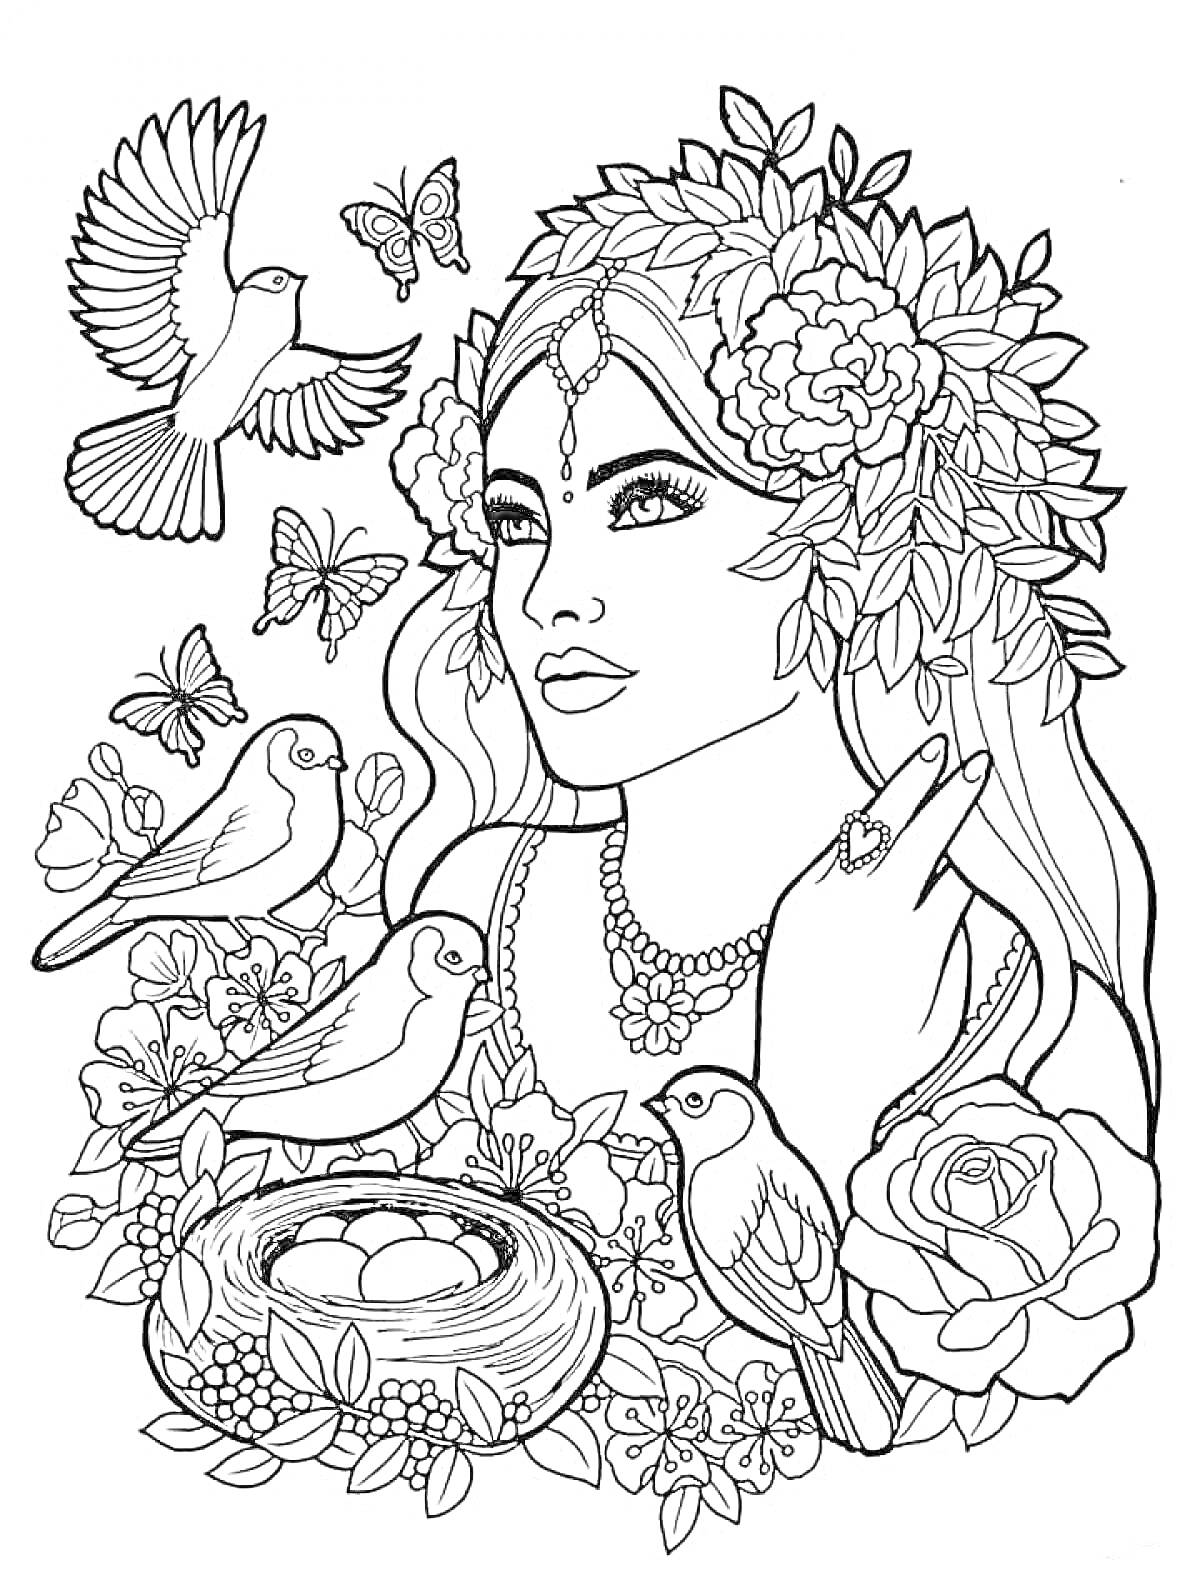 Раскраска Девушка с цветами, птицами и бабочками